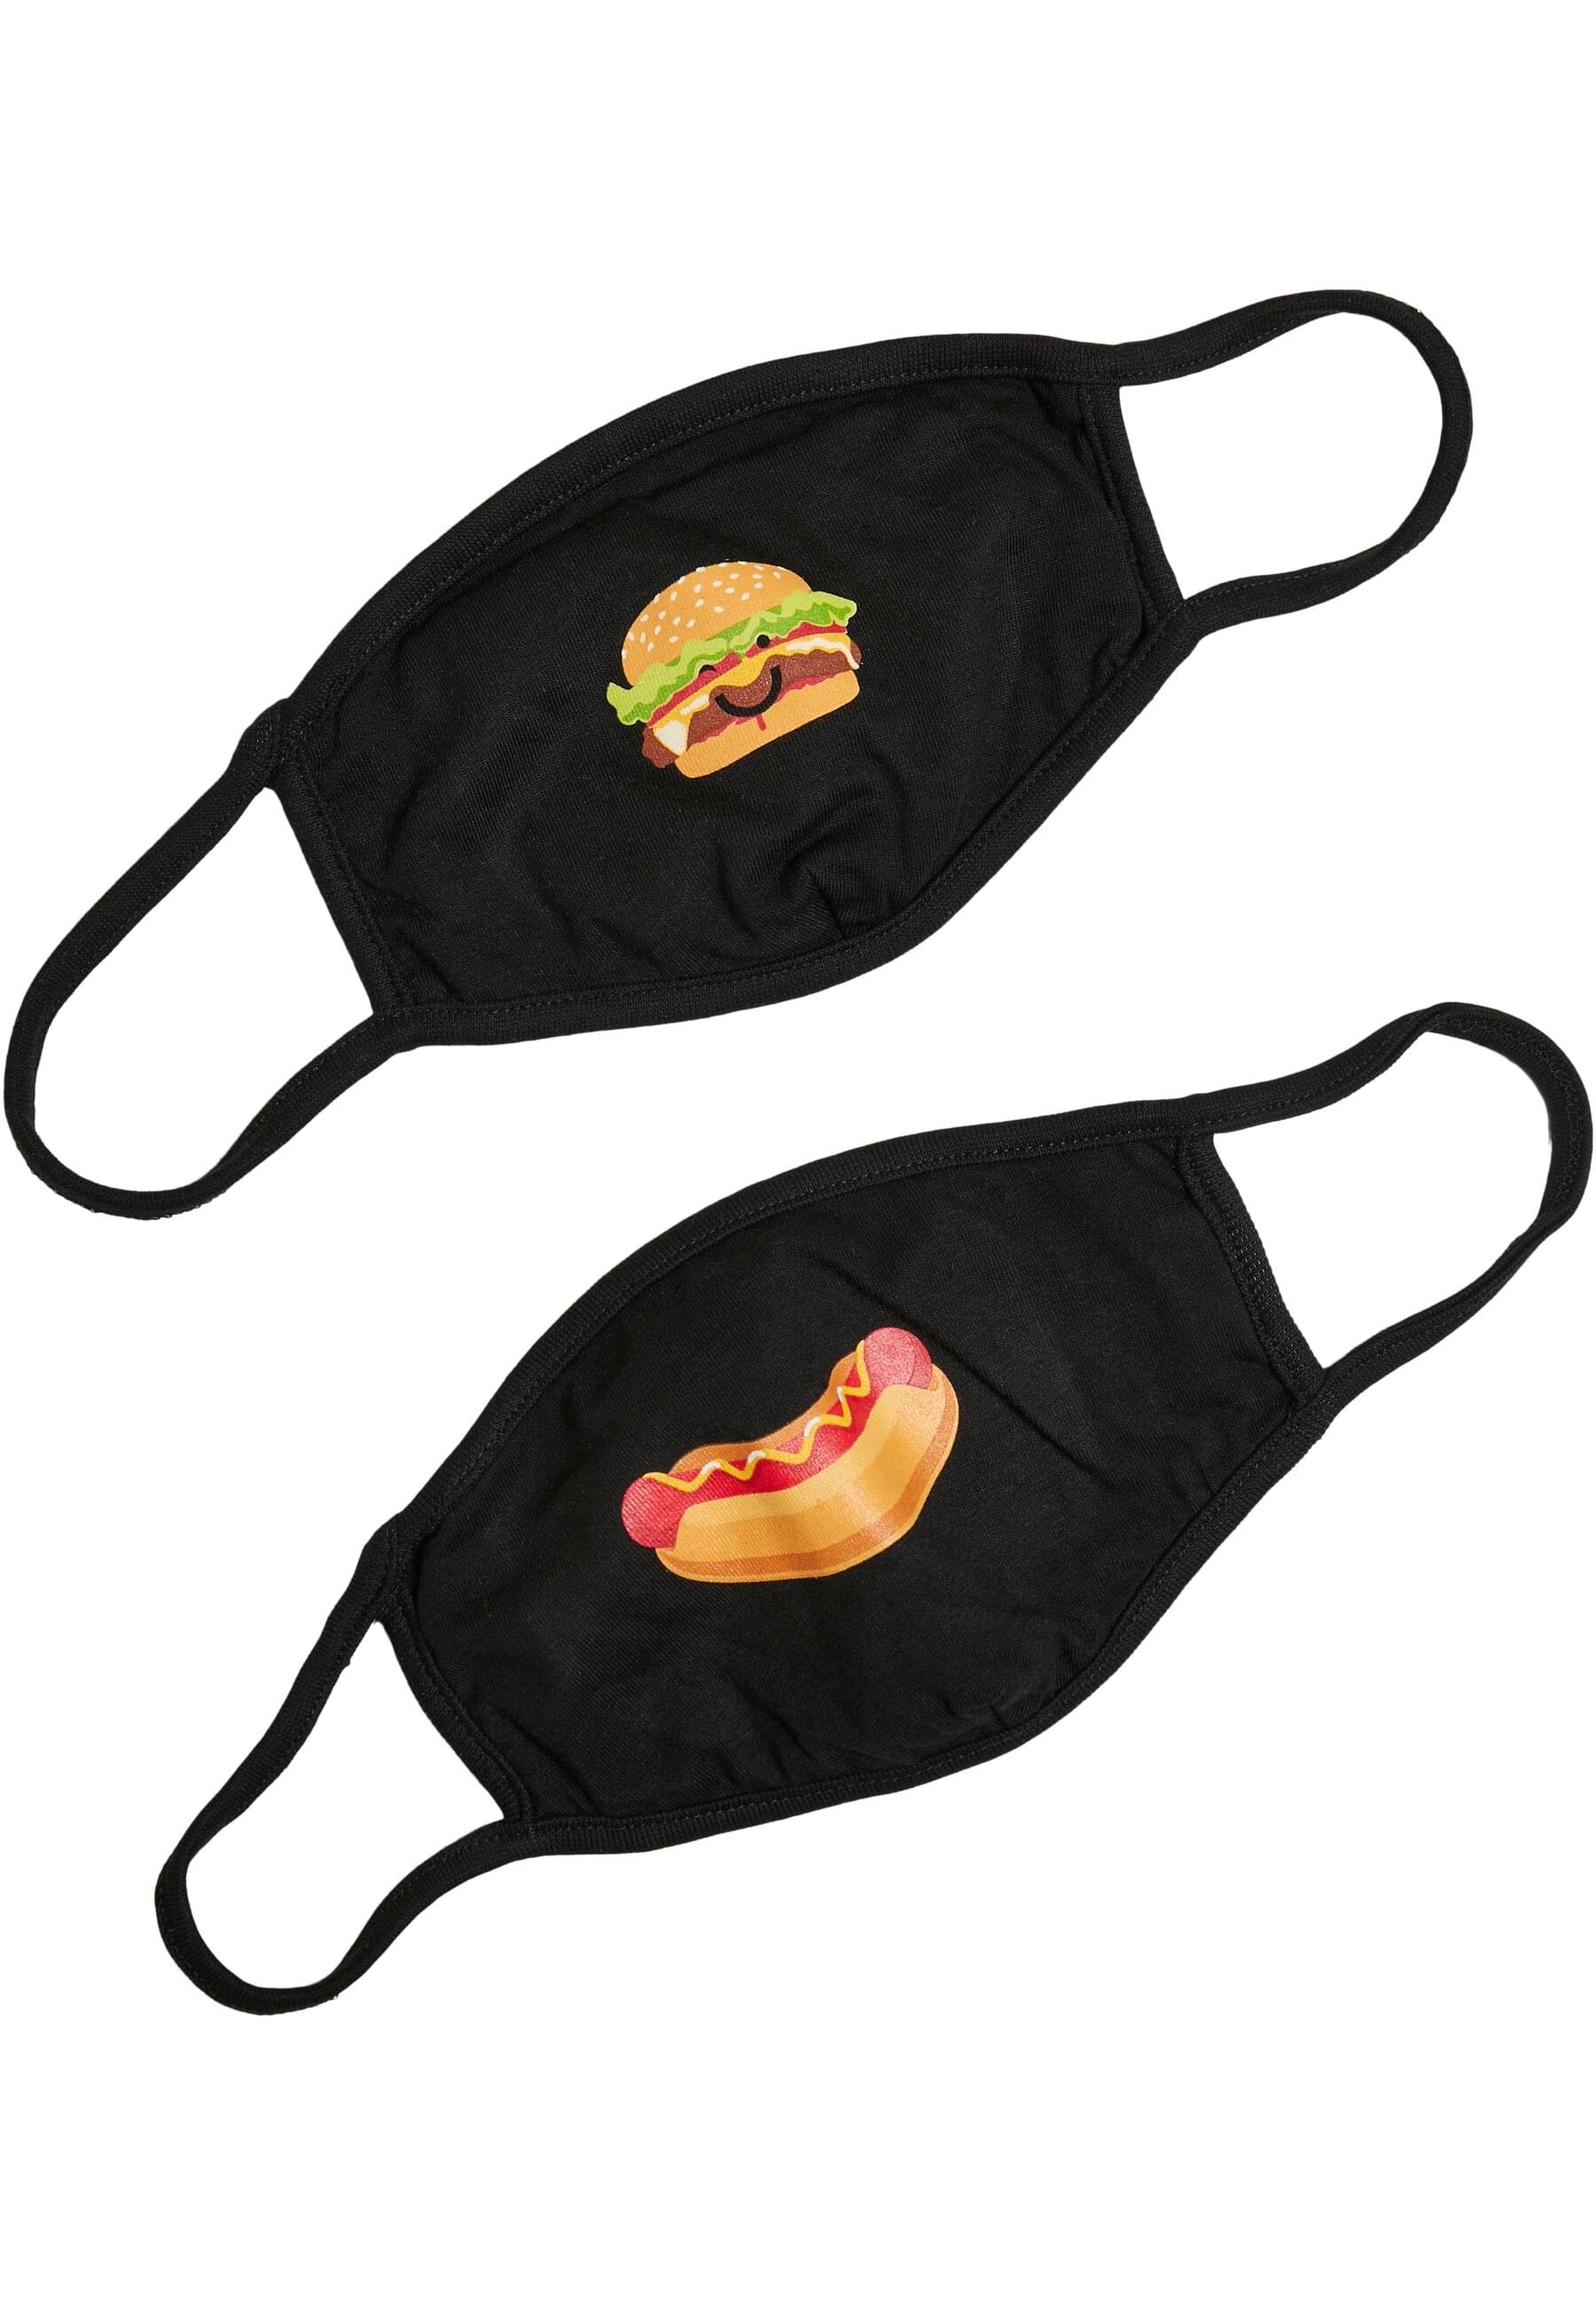 MisterTee Mund-Nasen-Maske »MisterTee Unisex Burger and Hot Dog Face Mask 2-Pack«